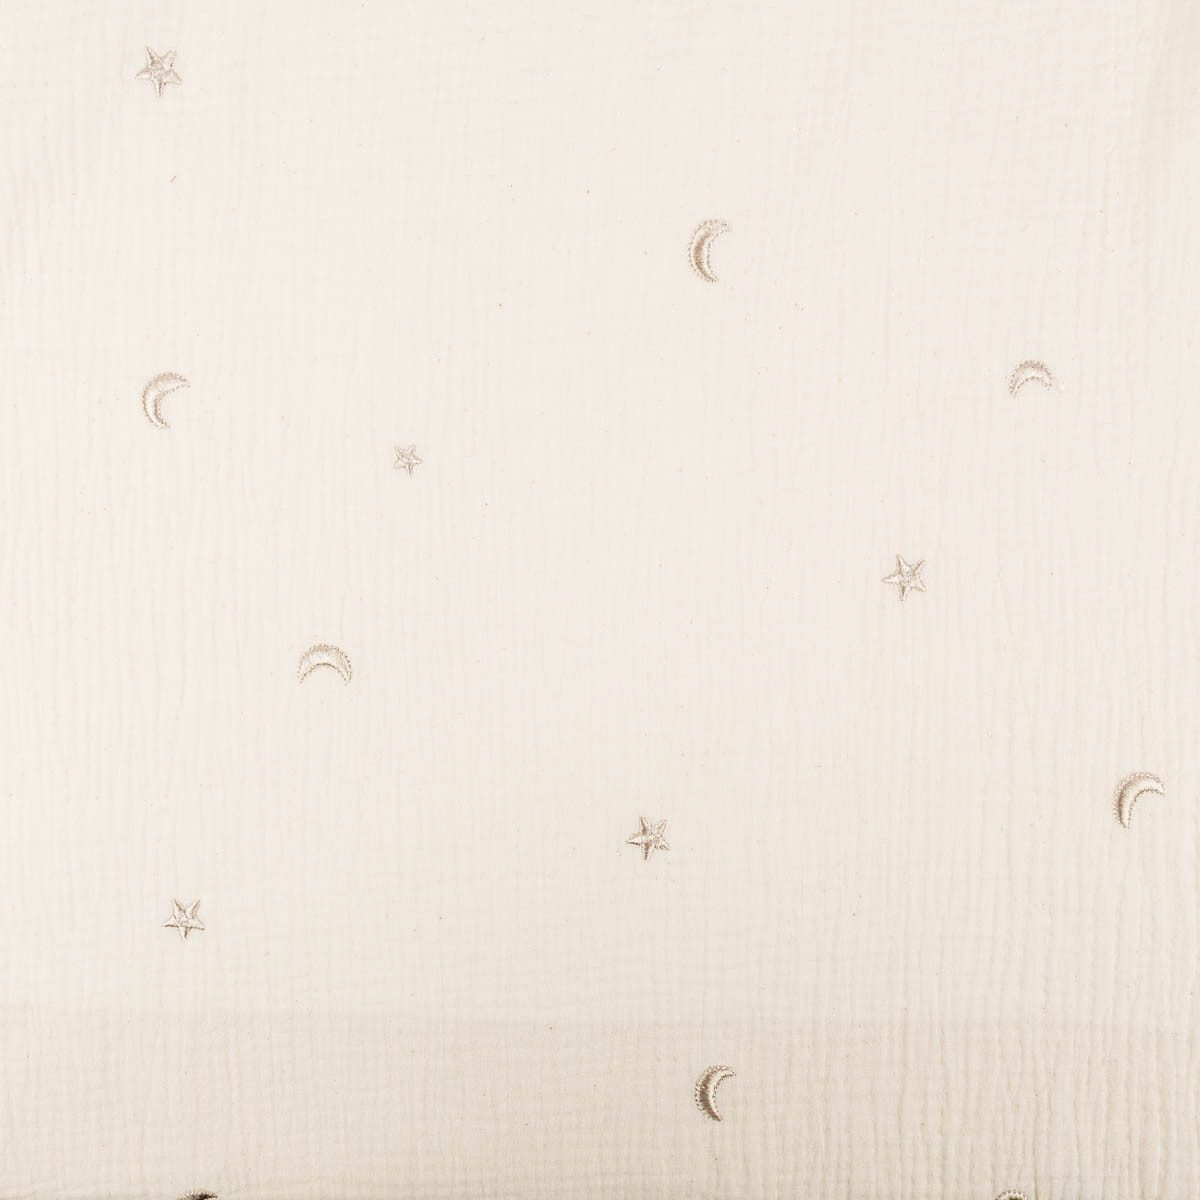 SCHÖNER LEBEN. Stoff Musselin Stoff Double Gauze STARS Stickerei Sterne Mond beige 1,35m Br, allergikergeeignet